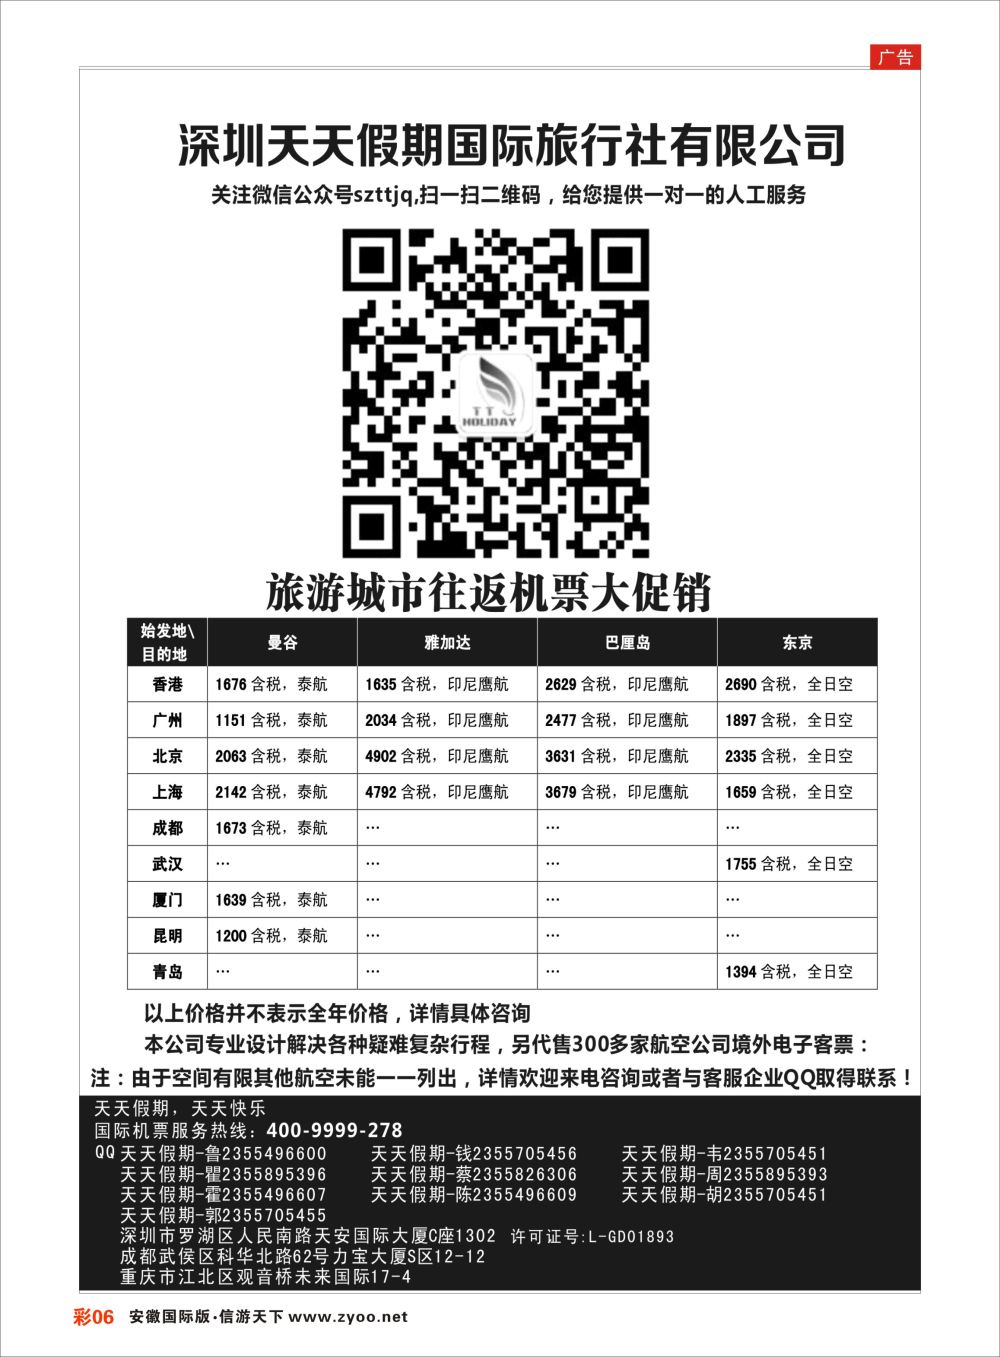 彩06 深圳天天假期-特价国际机票机票预订